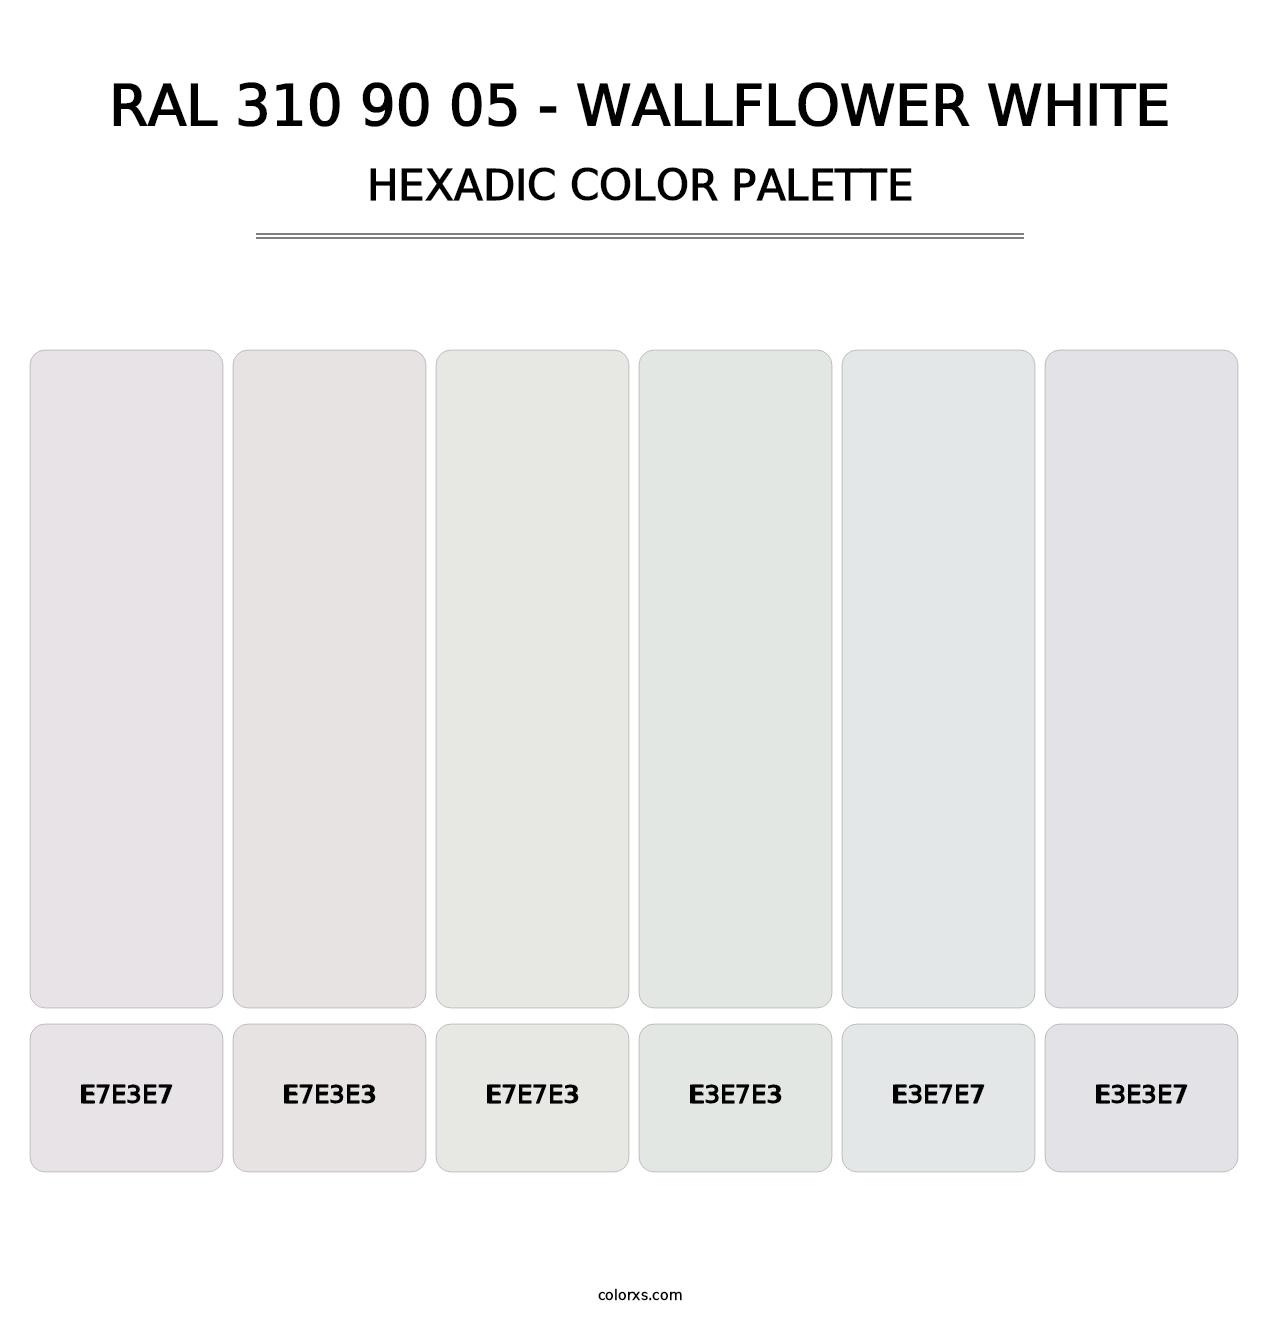 RAL 310 90 05 - Wallflower White - Hexadic Color Palette